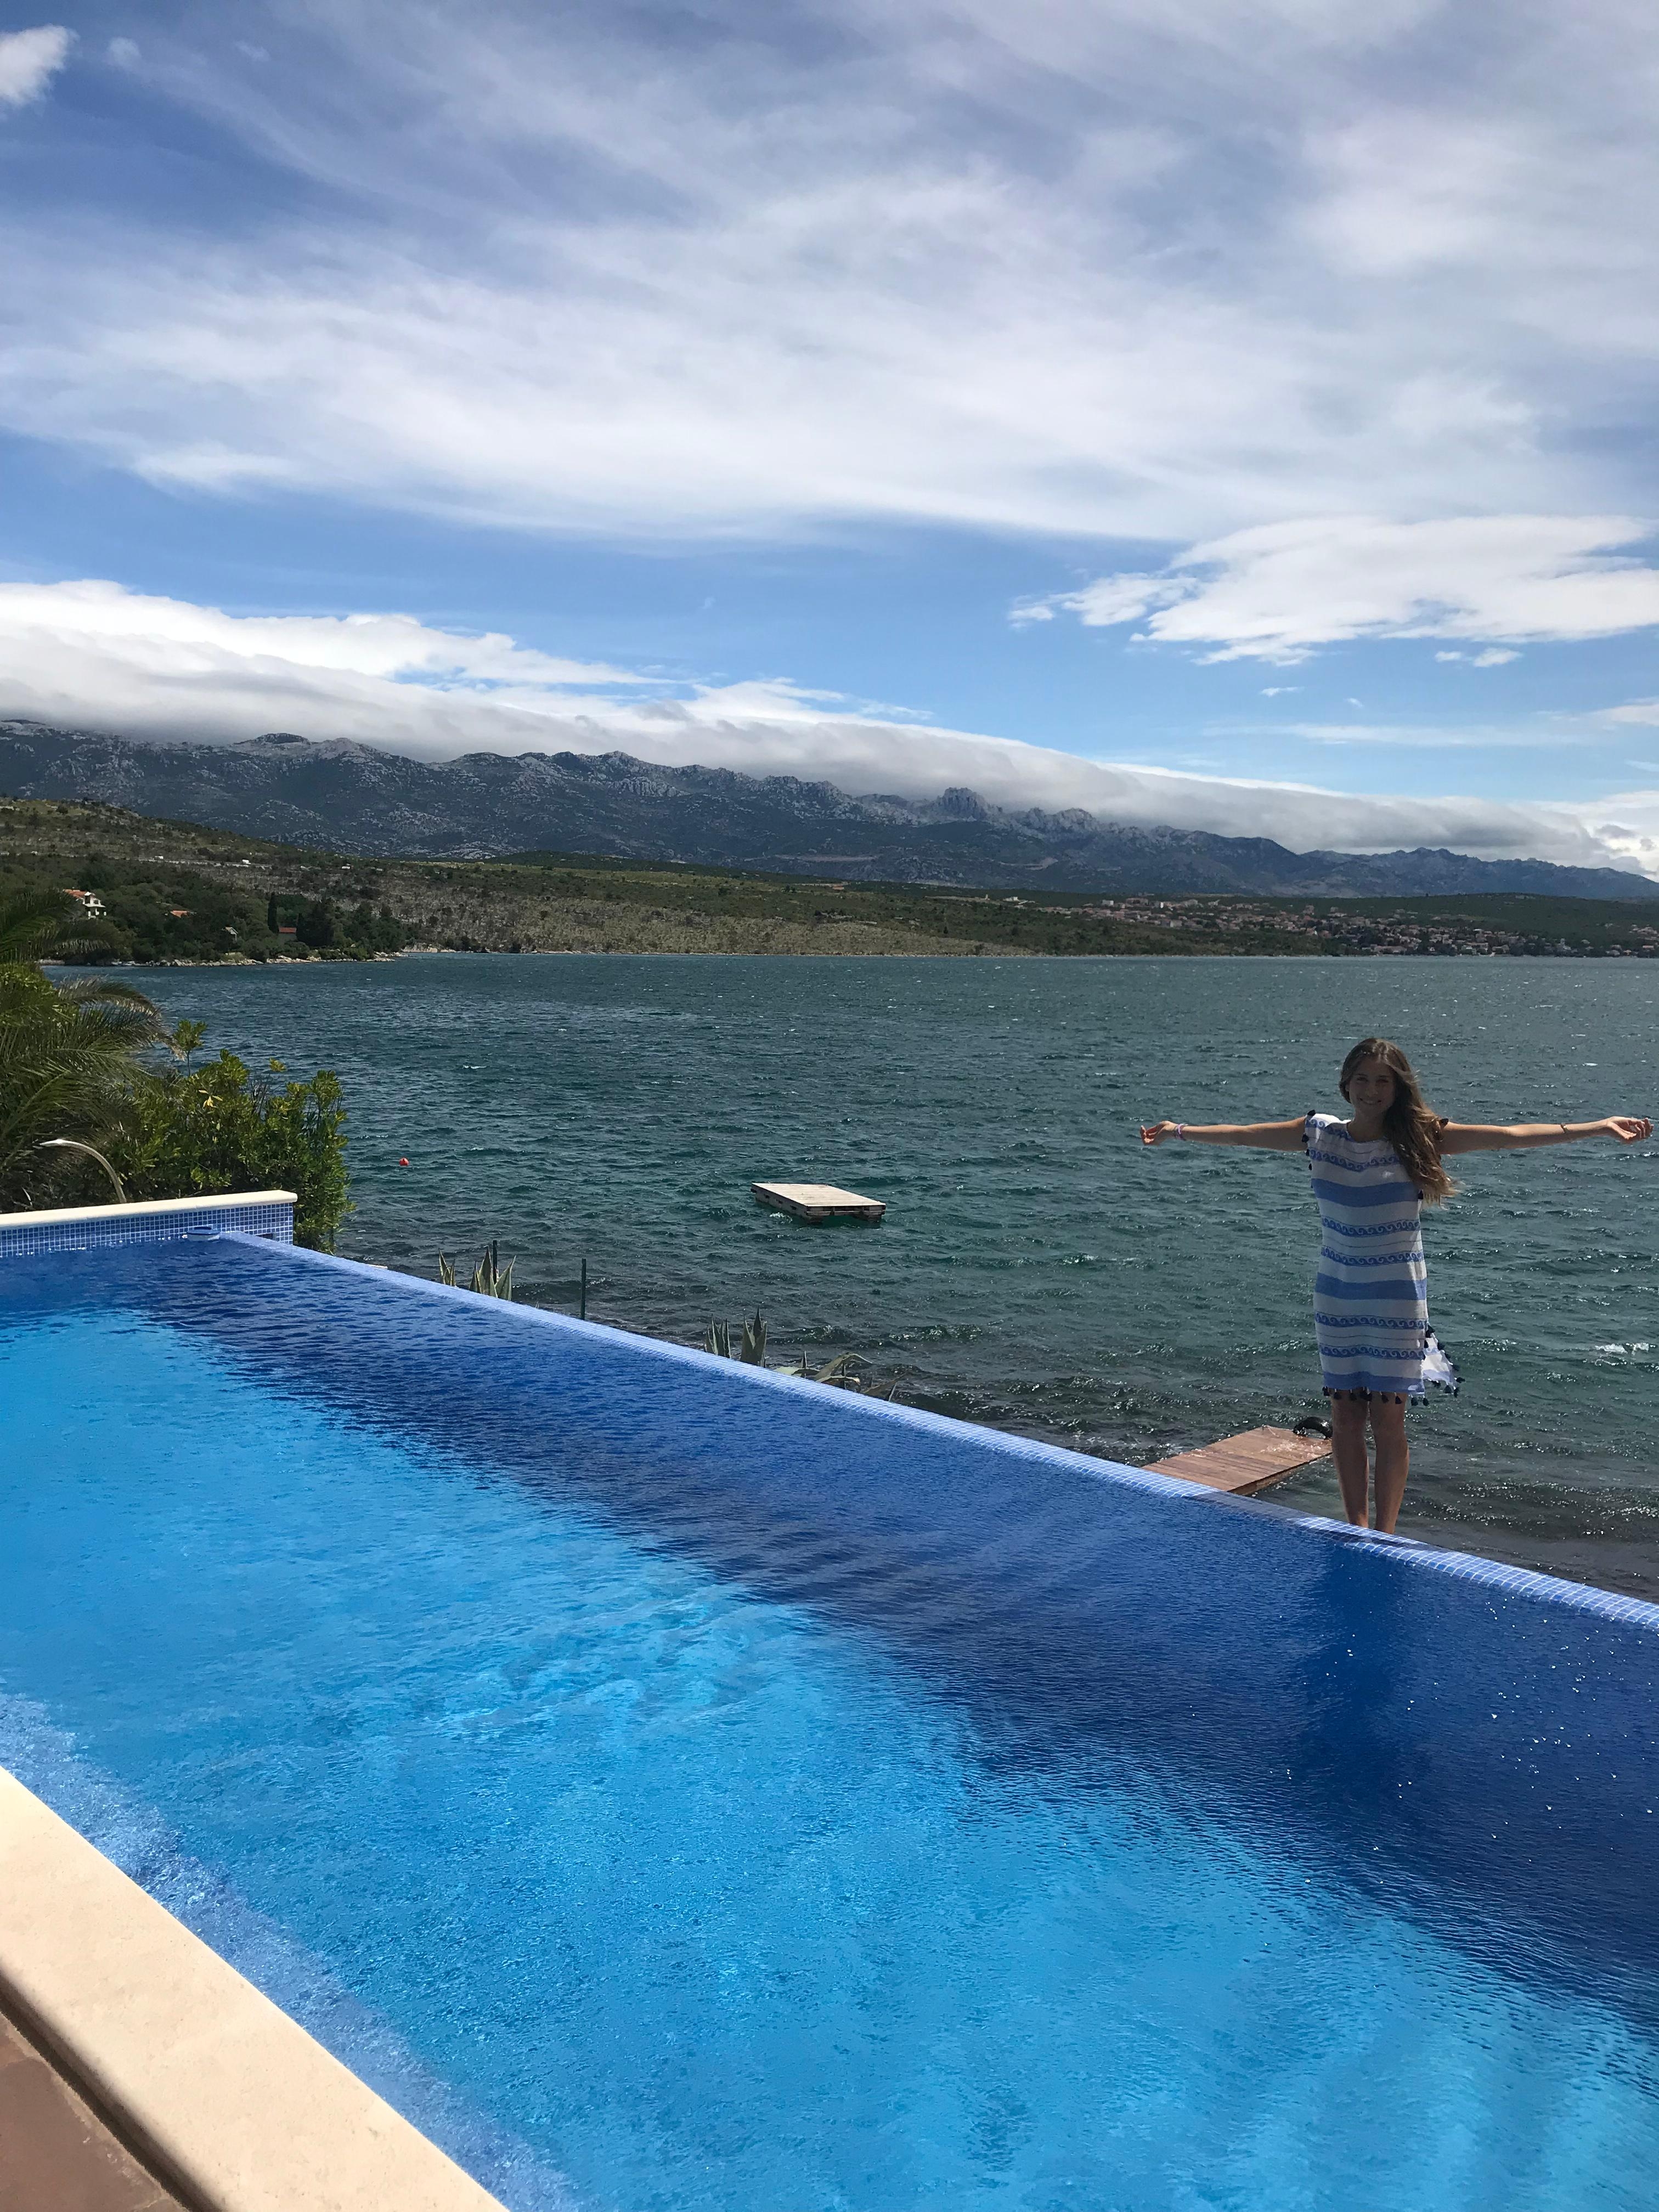 Der Infinity-Pool hat einen unglaublichen Ausblick #travel #airbnb #pool #urlaub #kroatien